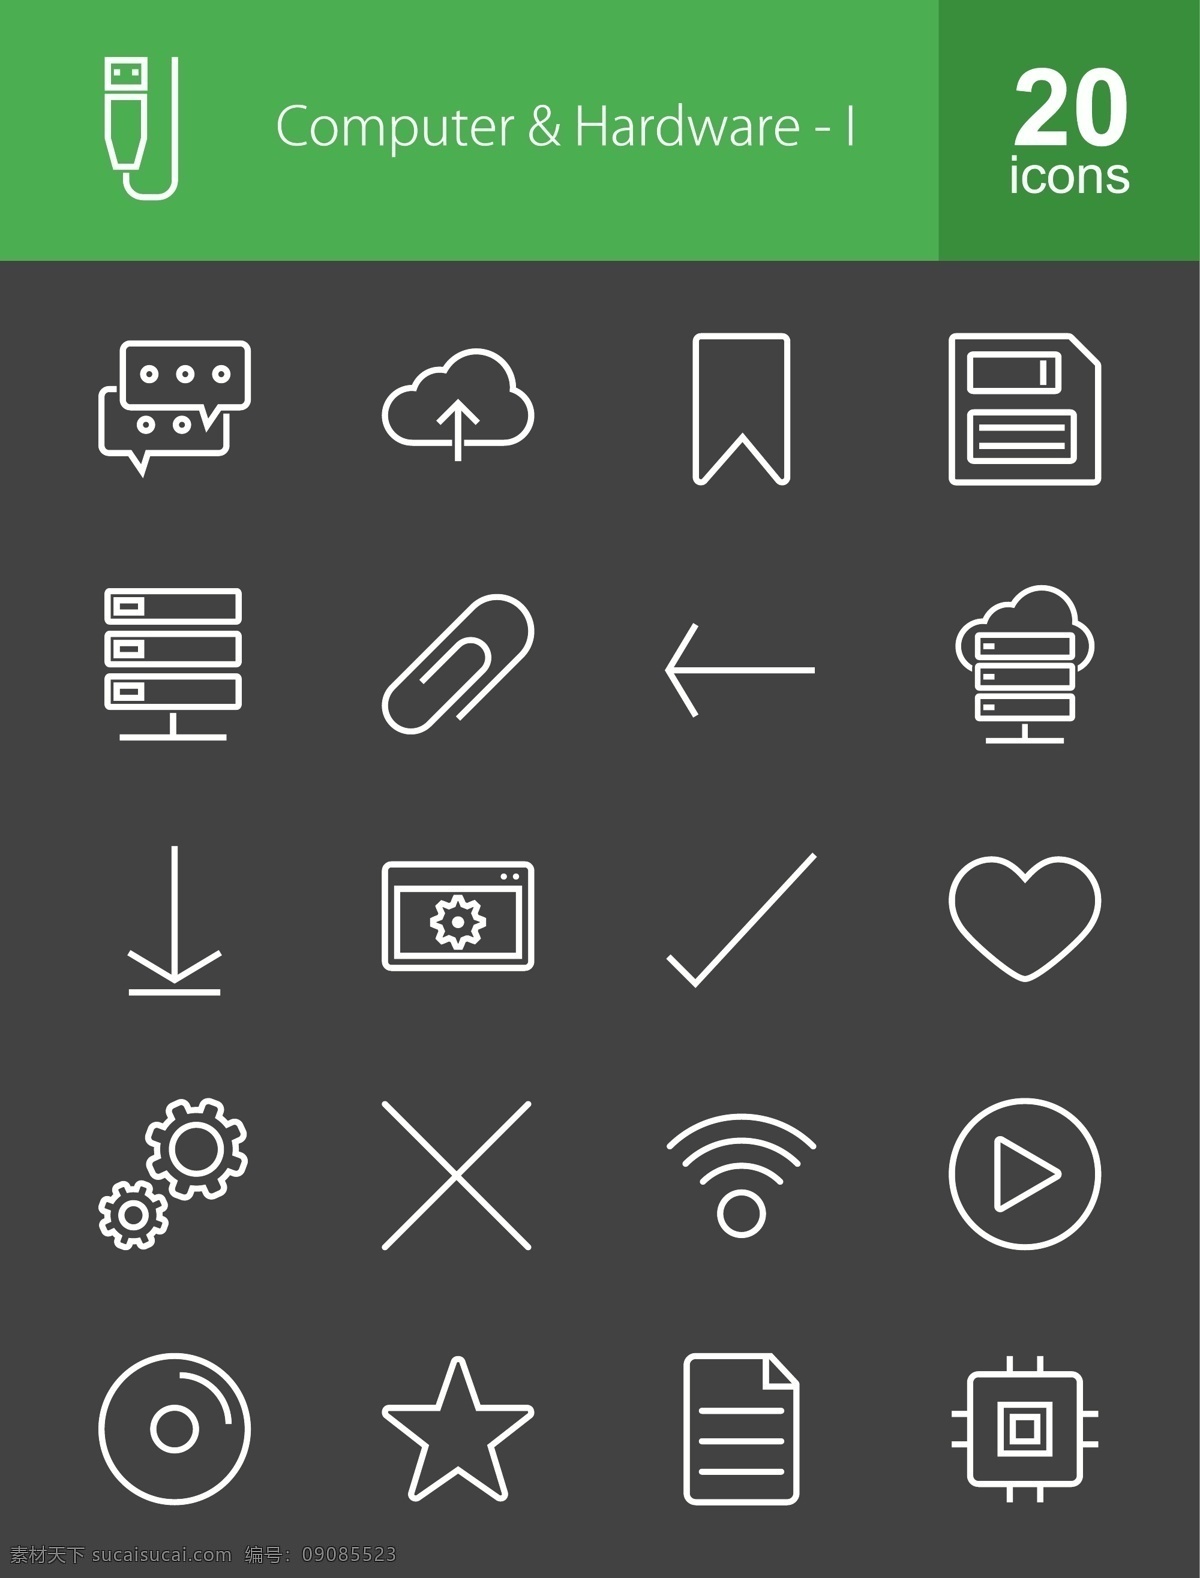 款 科技 灰色 计算机 硬件 icon icon图标 别针 对话框 勾 叉 icon下载 星号 下载标识 音量标识